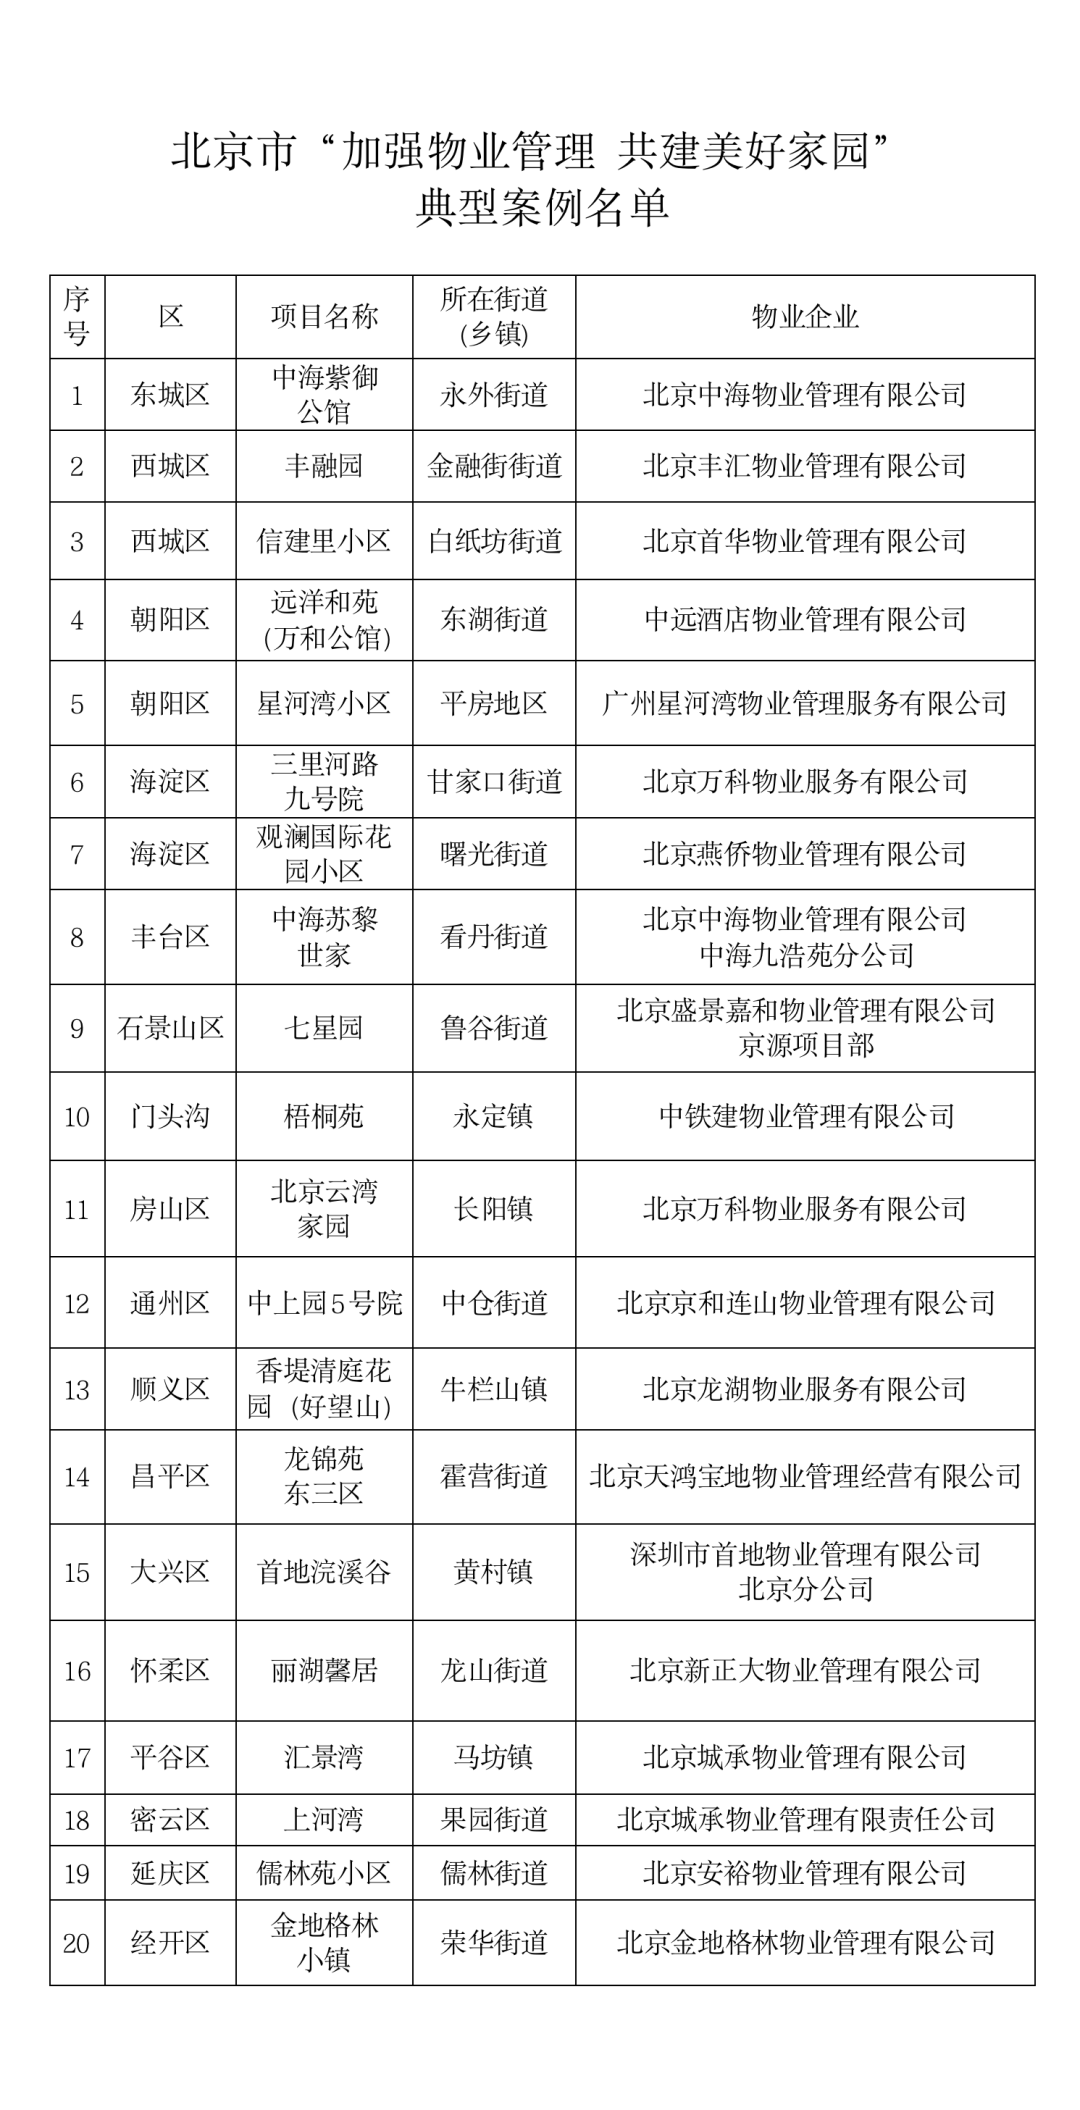 你所在小区上榜了吗？北京市公布20个市级美好家园典型案例名单